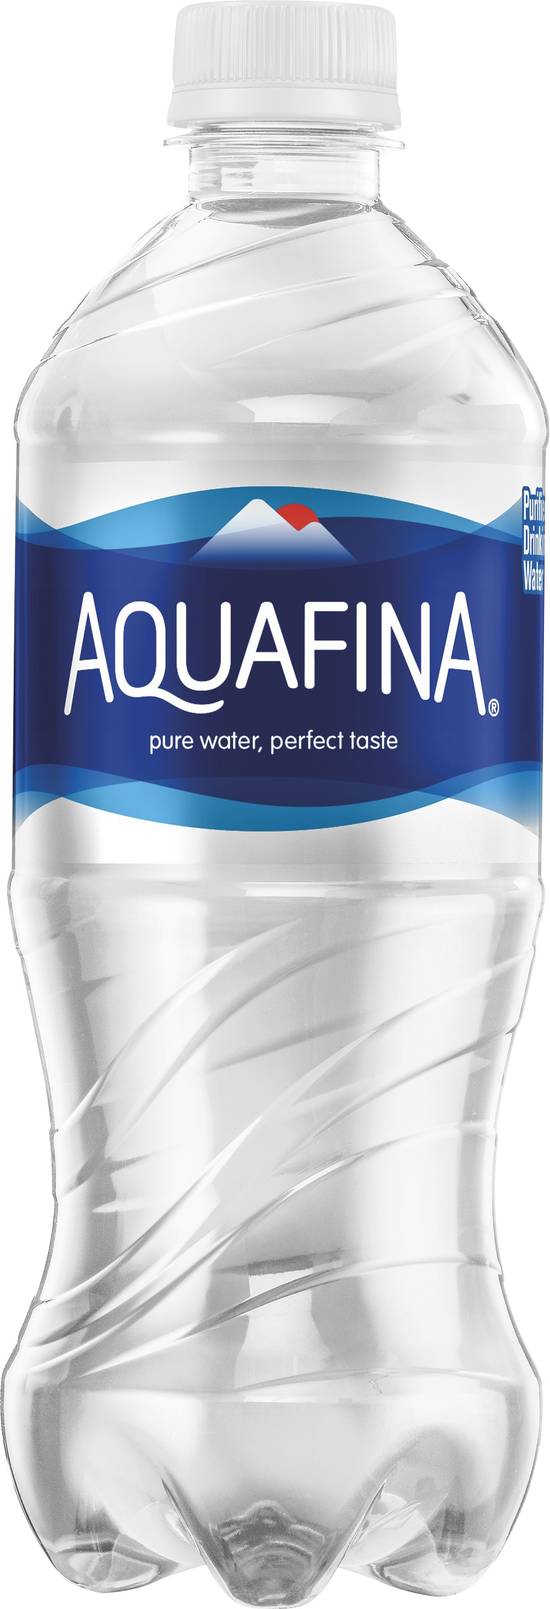 Aquafina Pure Water (20 fl oz)